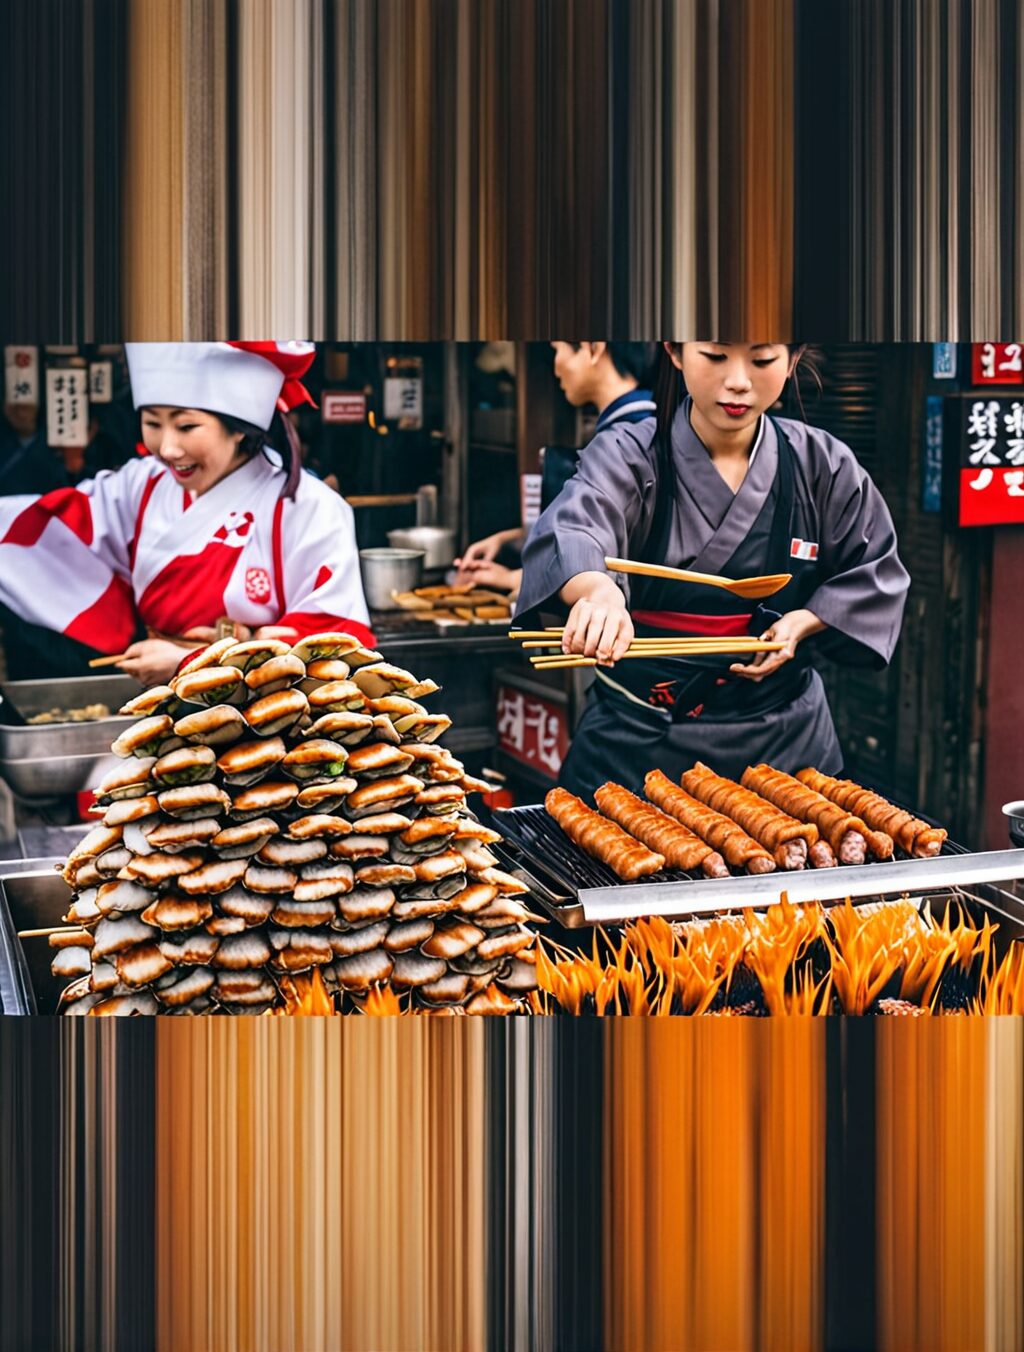 japan street food 75 photos